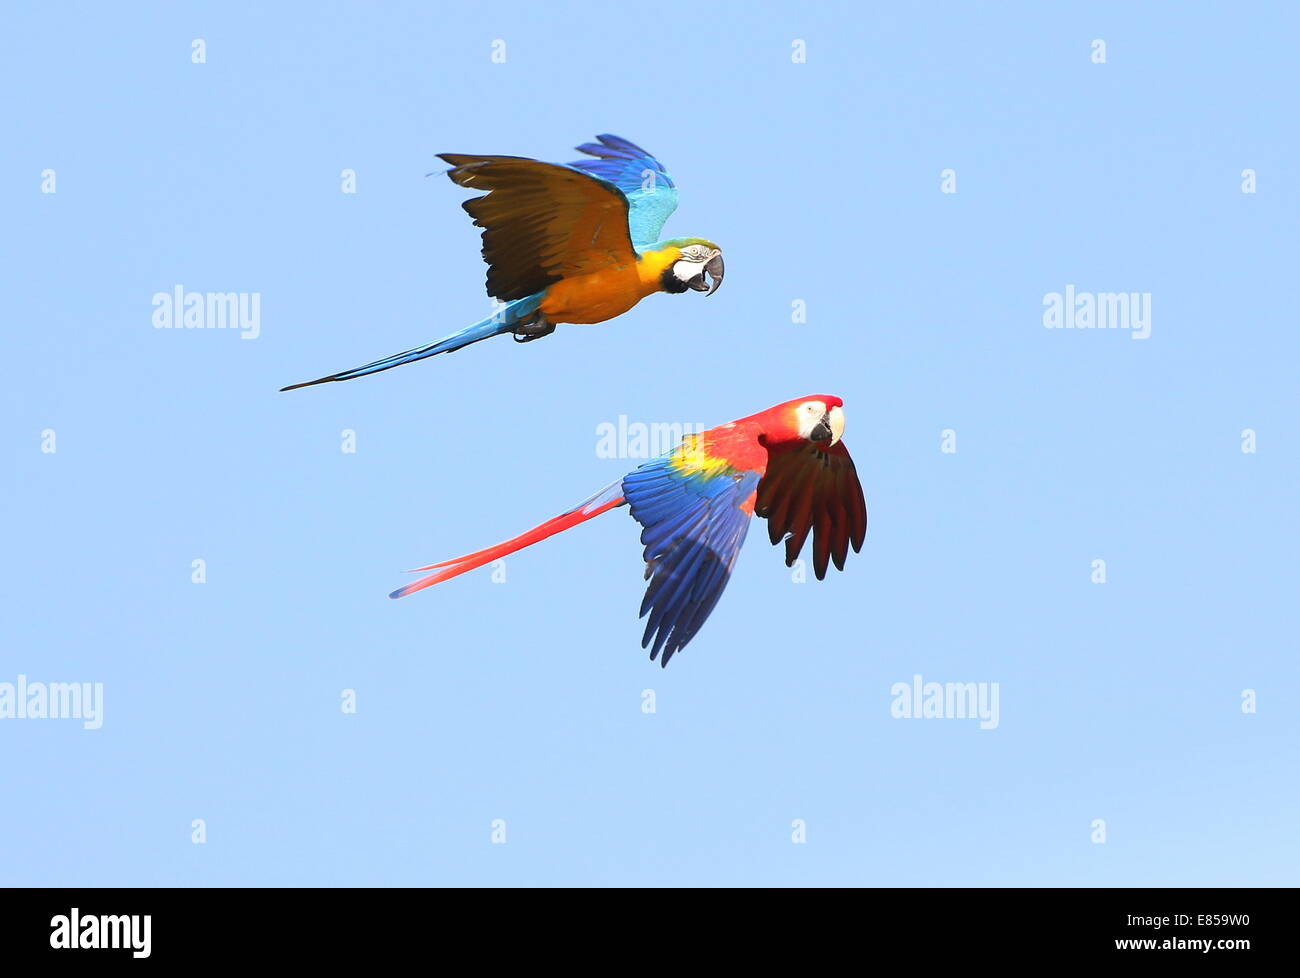 Azul y Oro guacamayo (Ara ararauna) en vuelo, acompañado por una guacamaya roja (Ara macao) Foto de stock